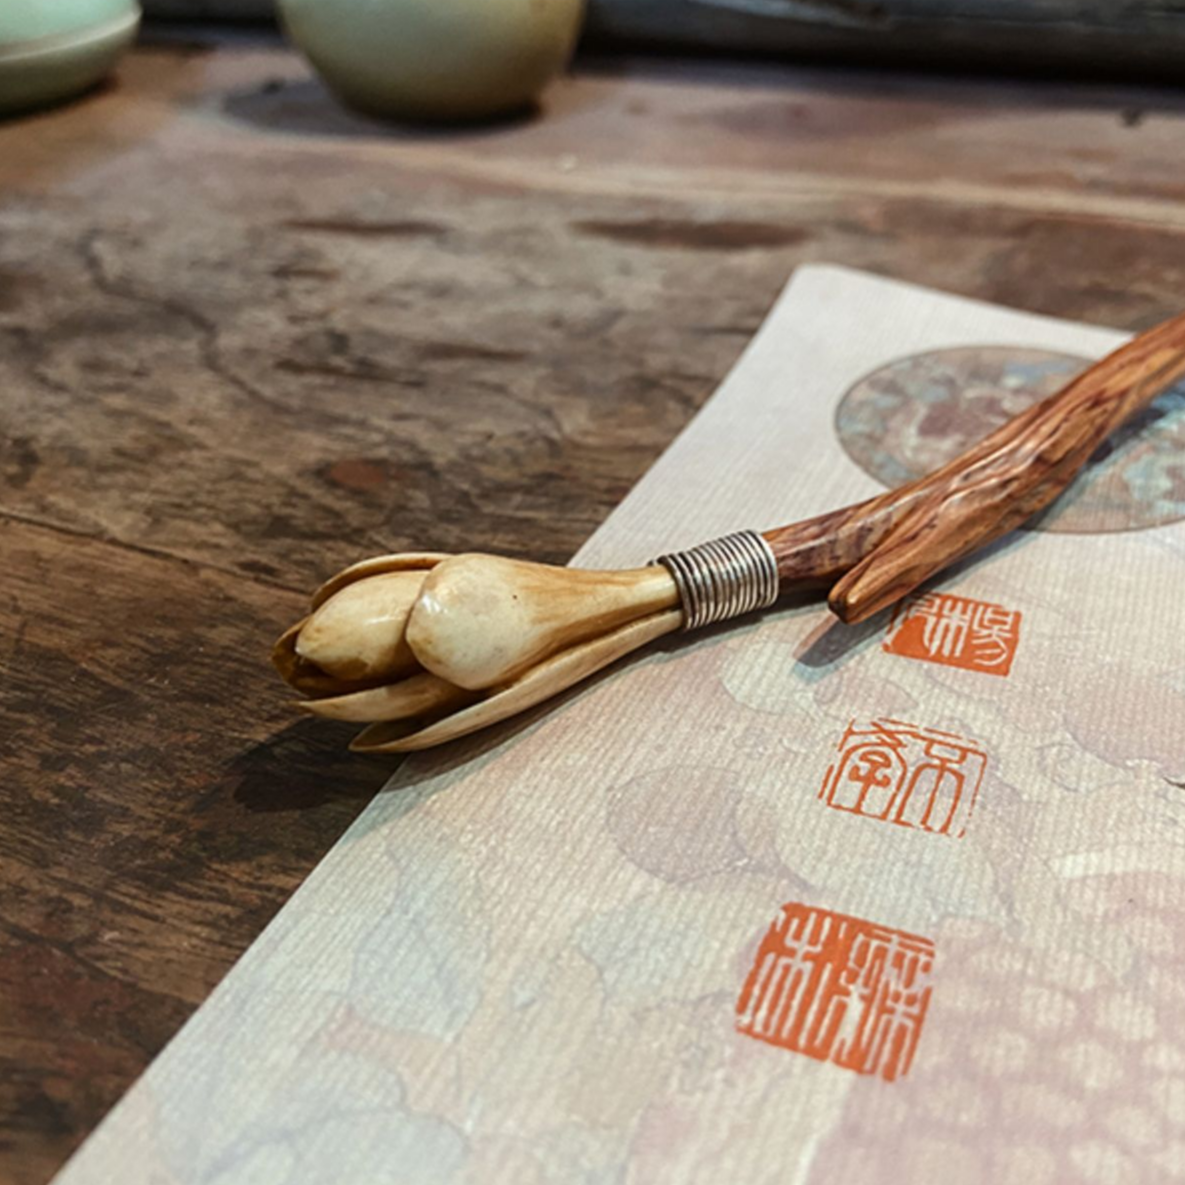 Handmade Mulan Wooden Hair Stick